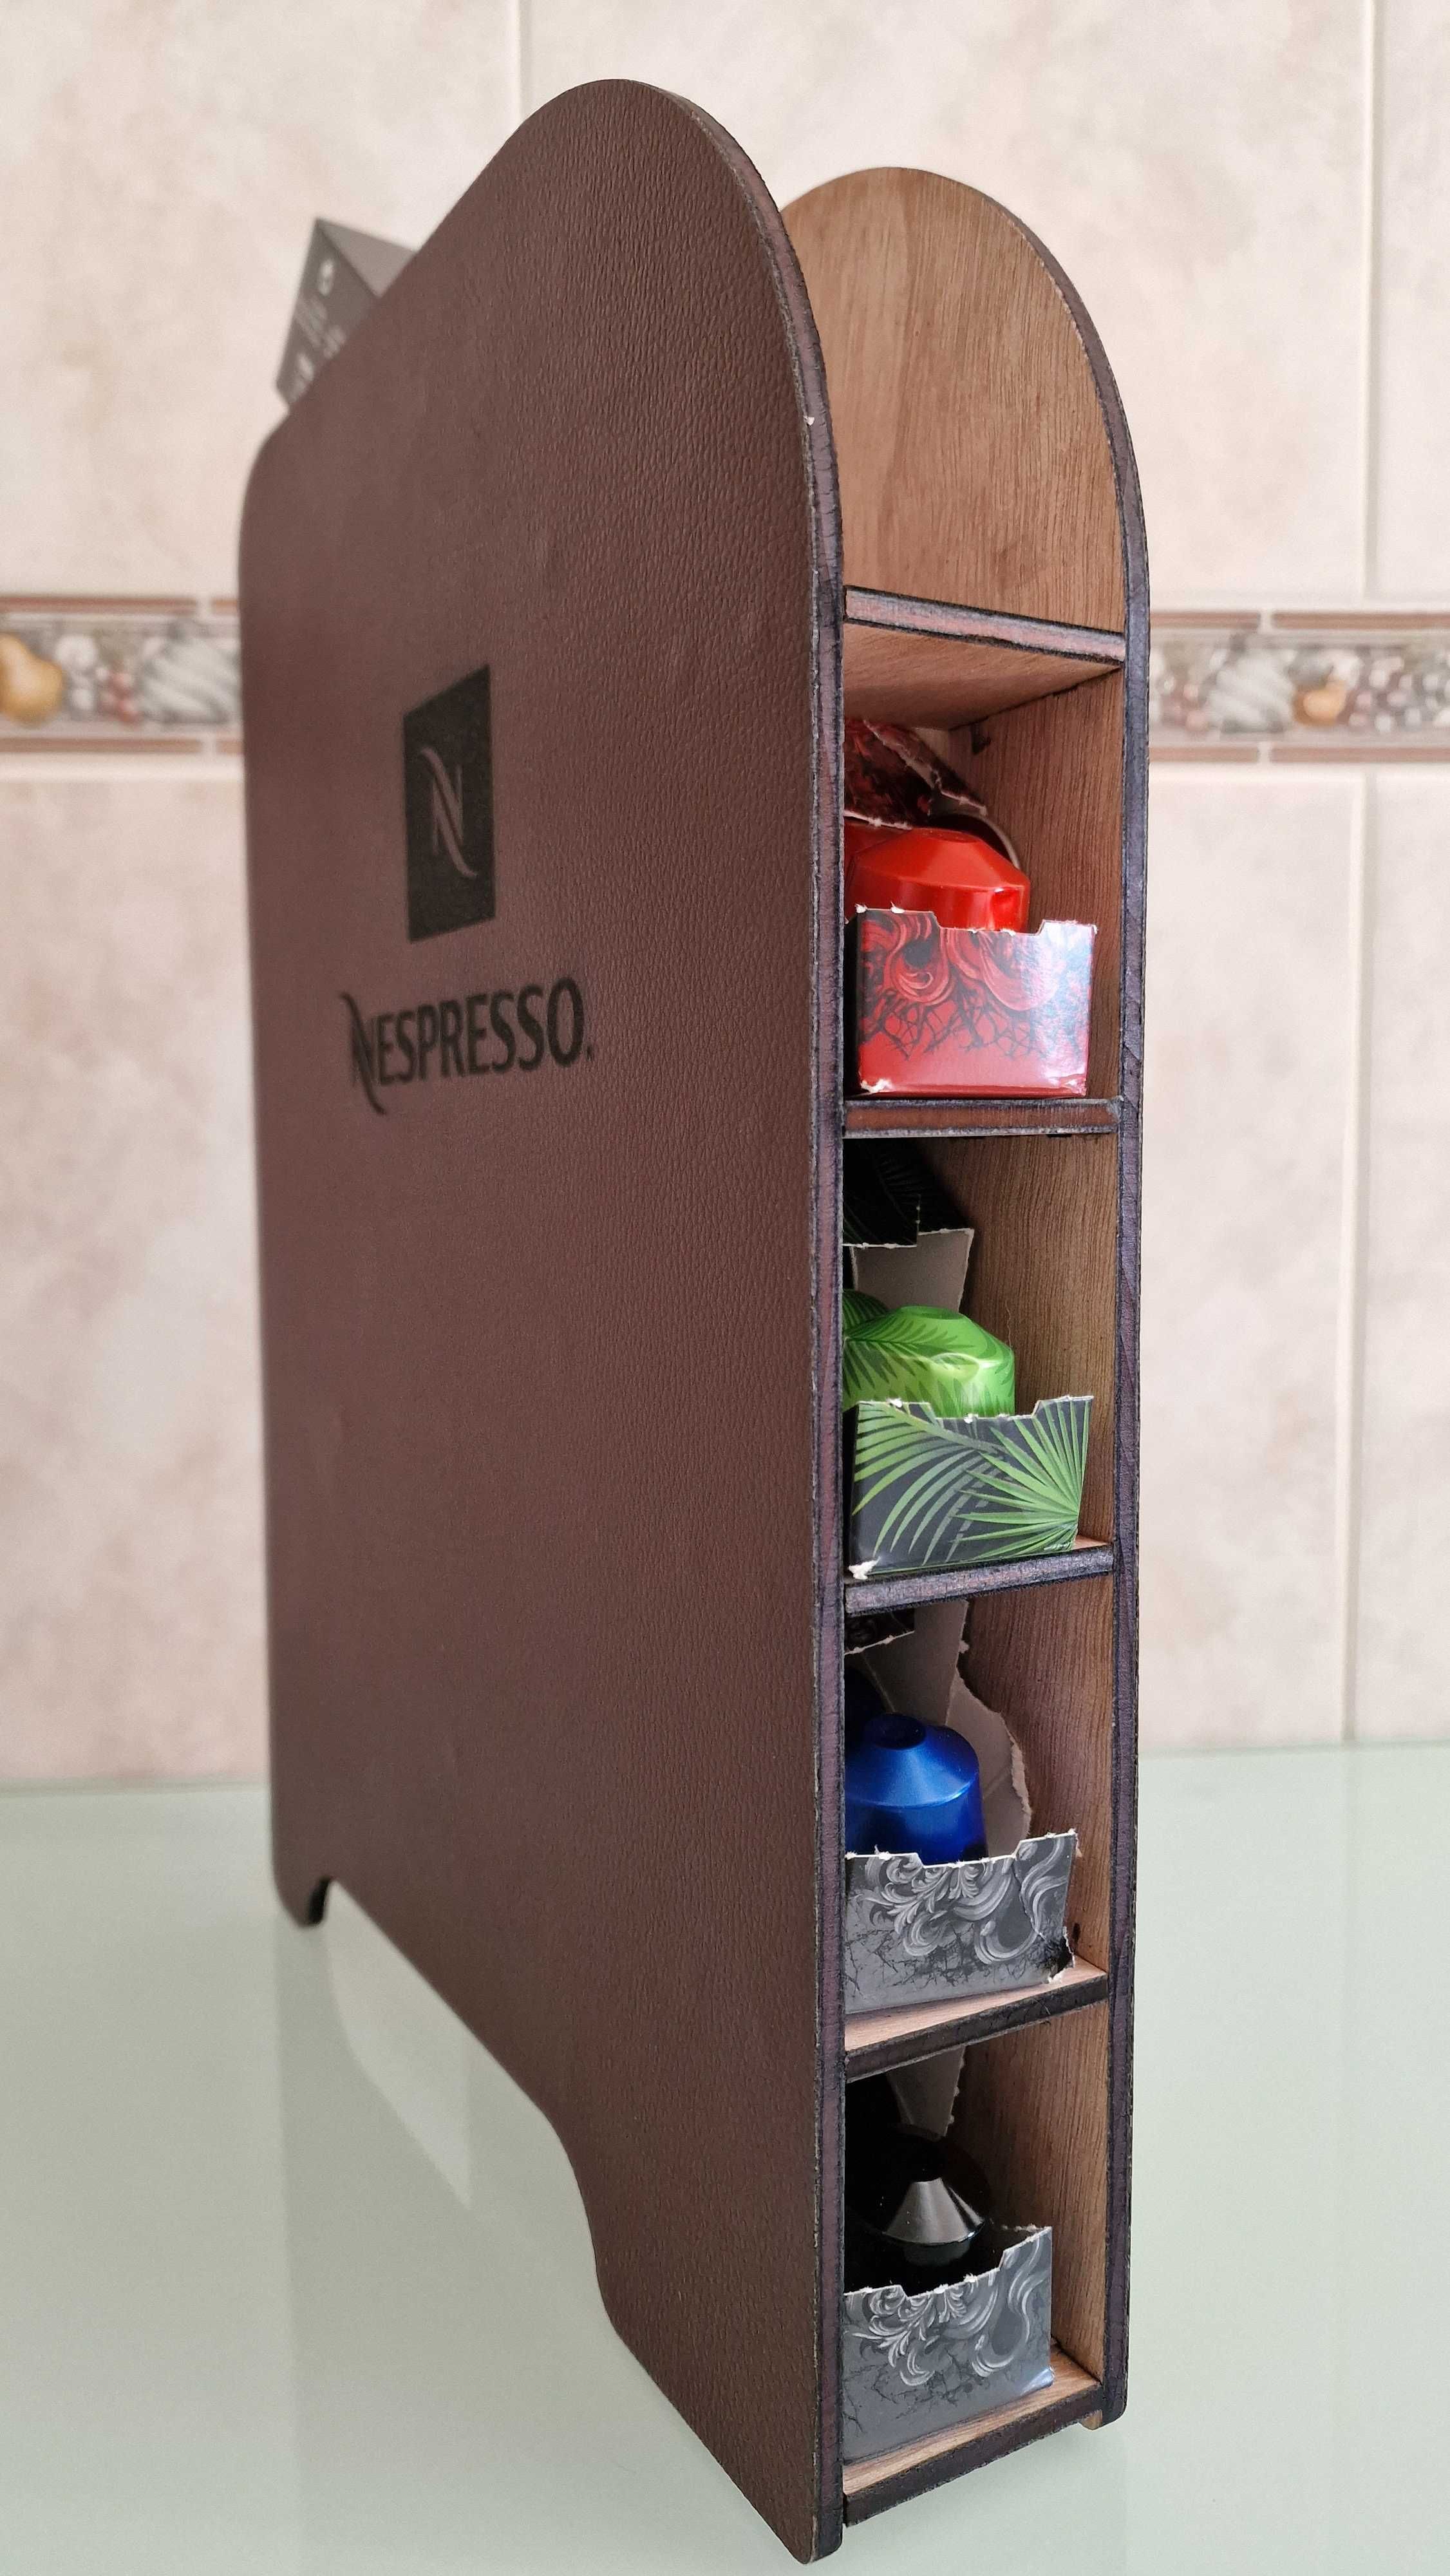 Caixa pastilhas café Nespresso